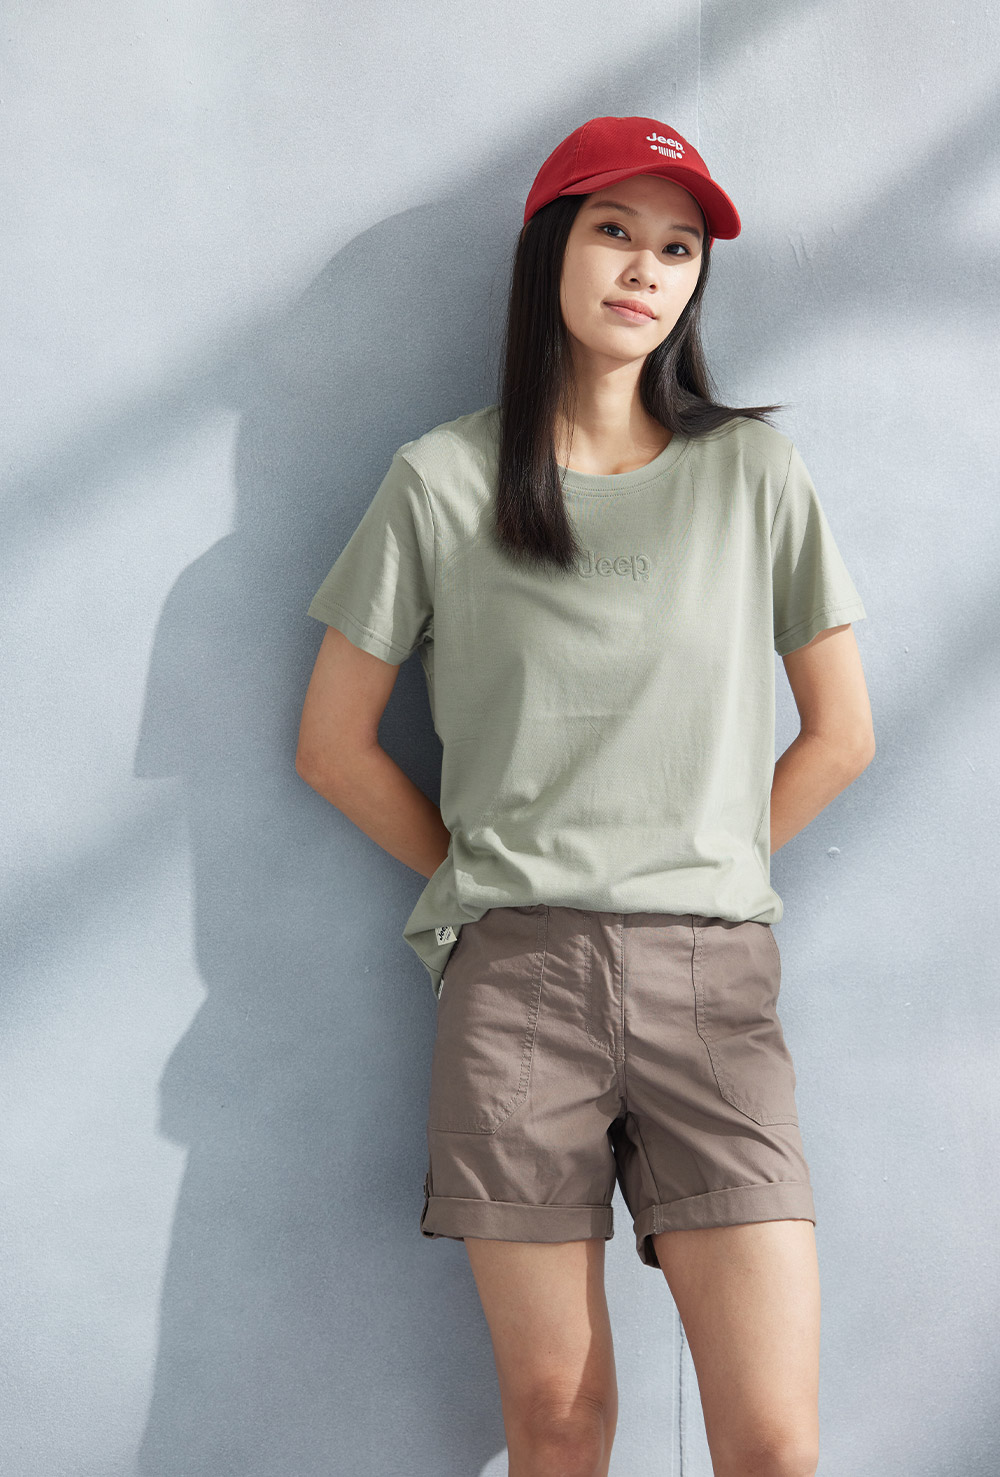 JEEP 女裝 素面LOGO刺繡短袖T恤(綠色)品牌優惠